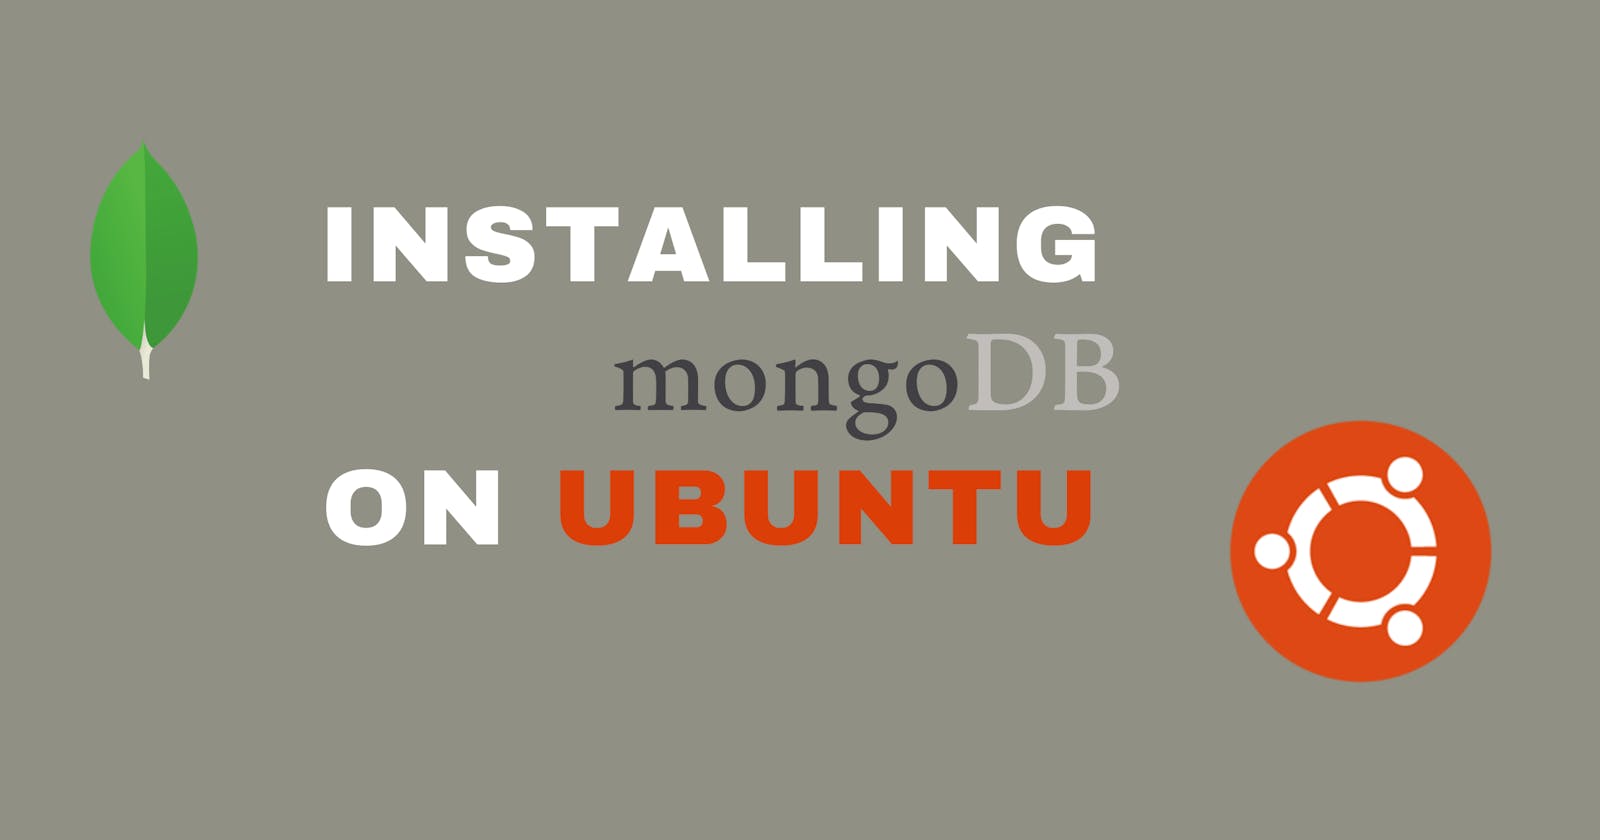 Installation of MongoDB on Ubuntu